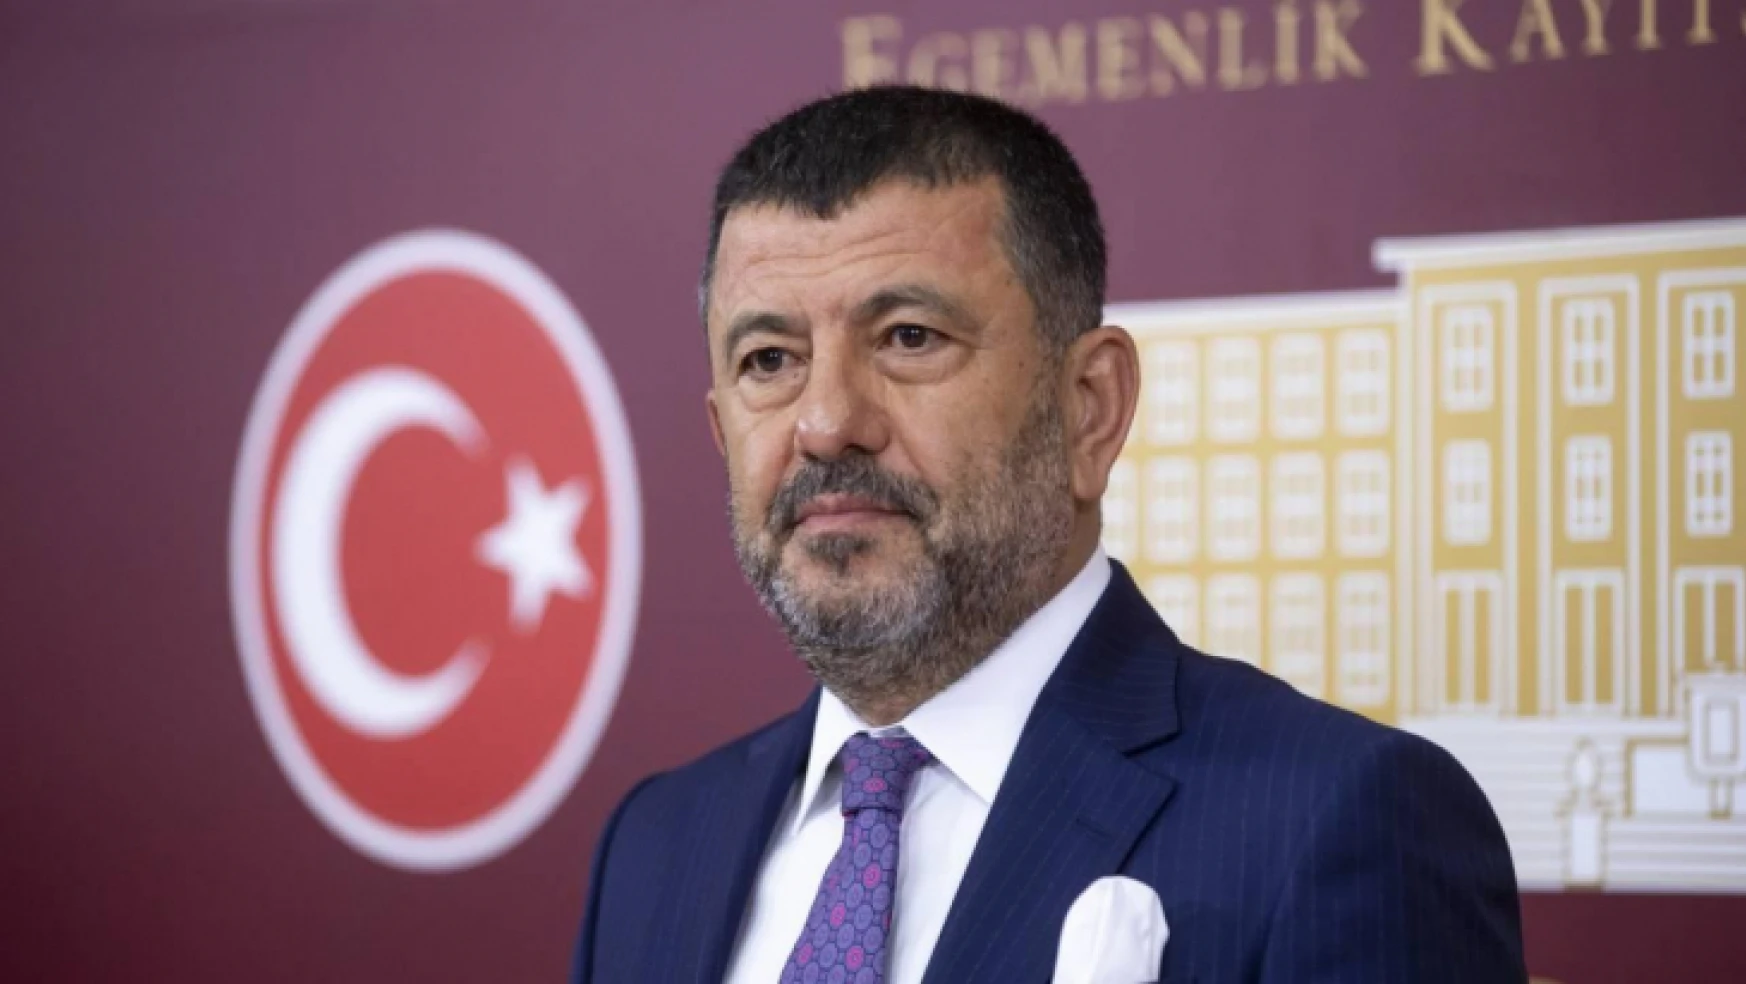 CHP Genel Başkan Yardımcısı Ağbaba'dan seçim sonuçlarına ilişkin açıklama